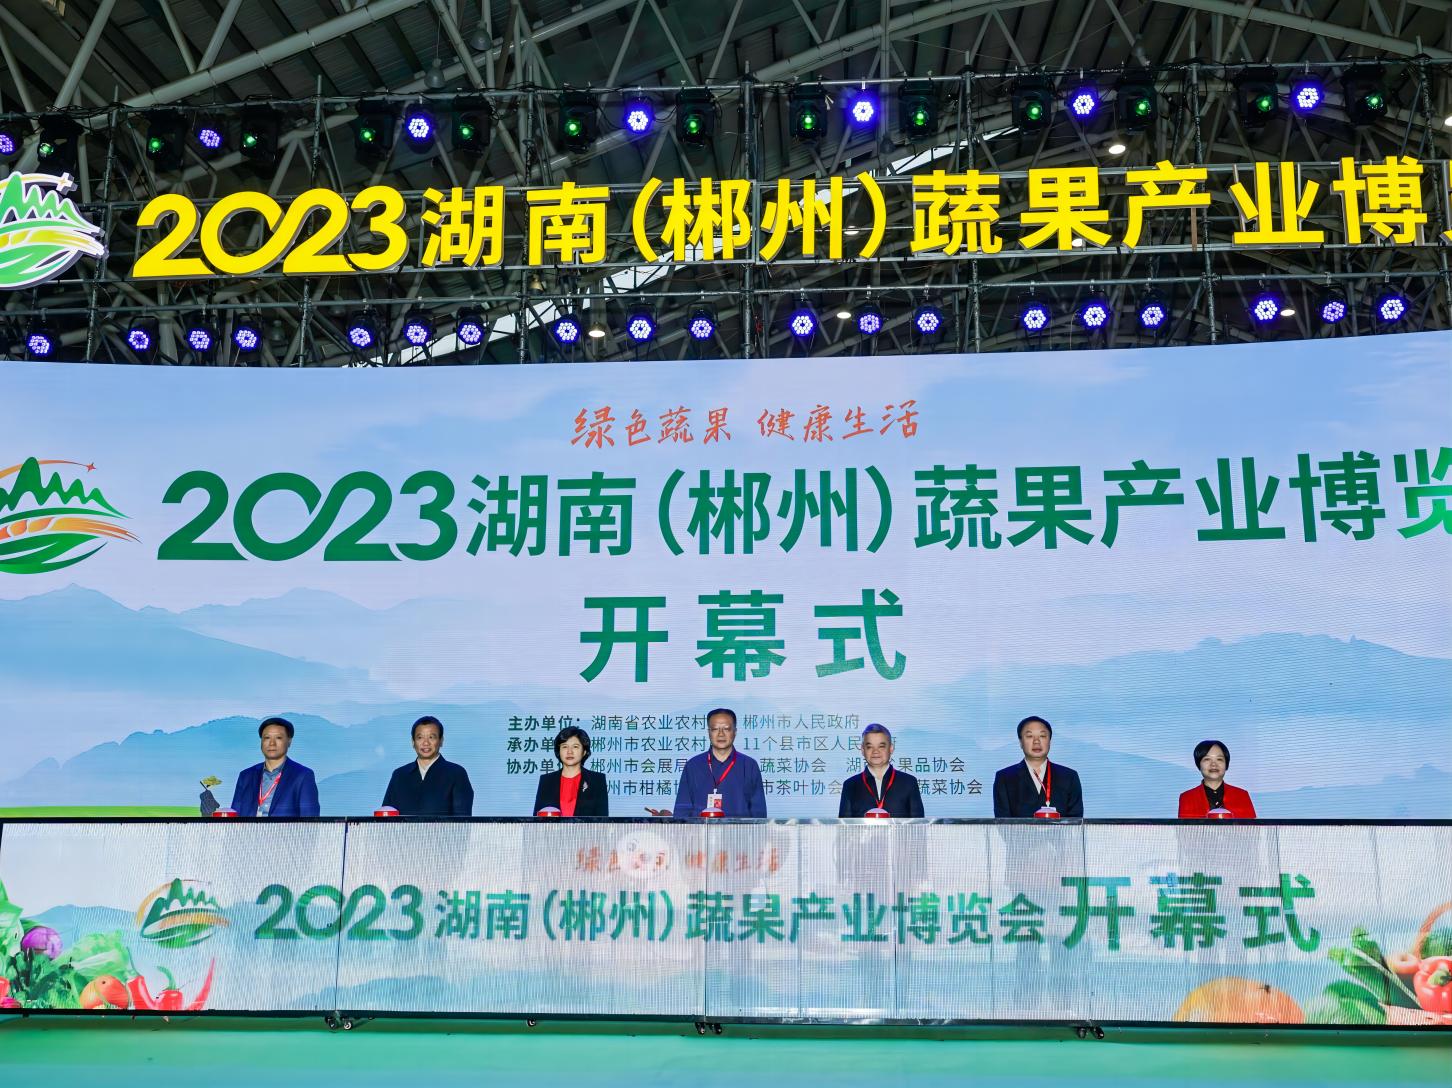 2023湖南(郴州) 蔬果產業博覽會